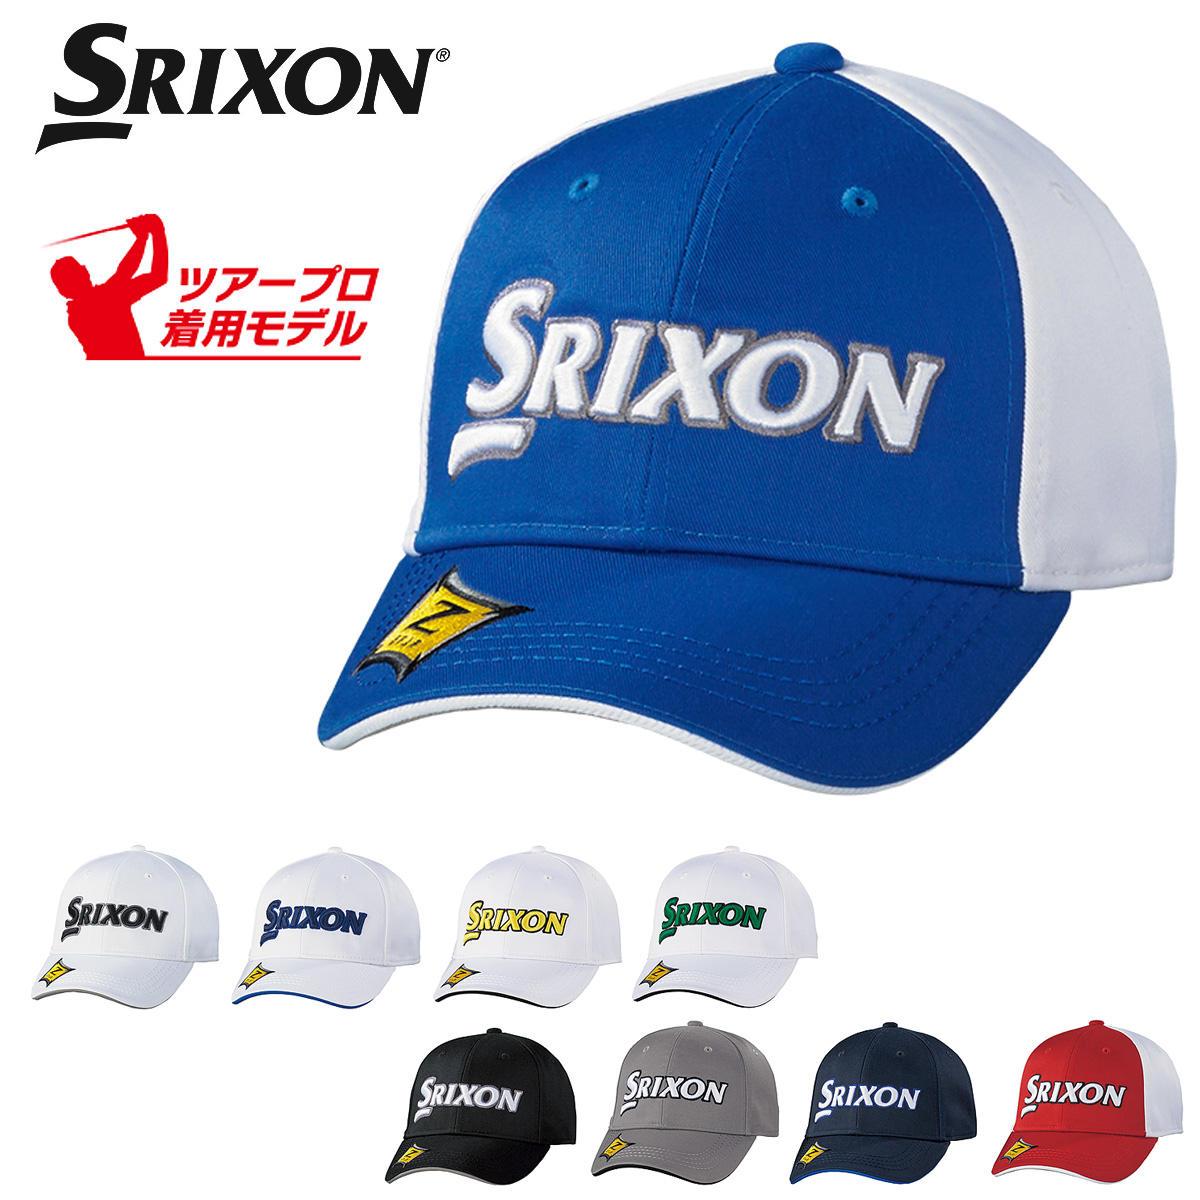 即納 DUNLOP ダンロップ 日本正規品 引出物 SRIXON スリクソン SMH1130X 2021新製品 ゴルフキャップ 安心と信頼 オートフォーカス あす楽対応 ツアープロ着用モデル